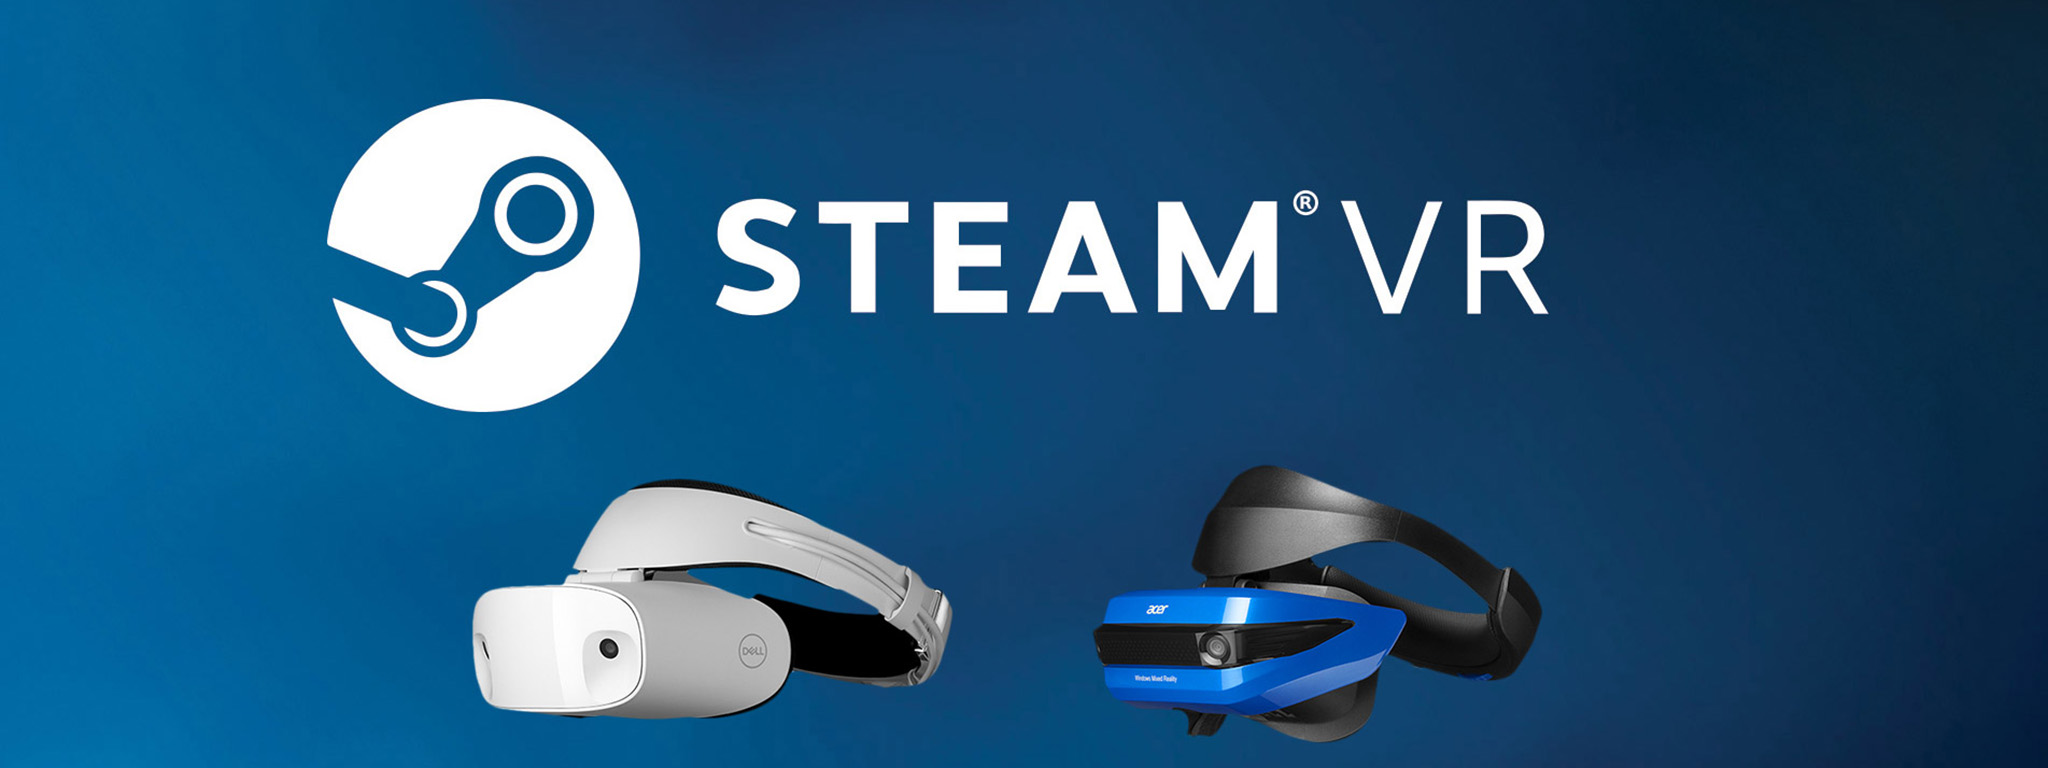 Microsoft hợp tác với Valve, kính thực tế ảo Windows Mixed Reality sẽ chơi được game SteamVR